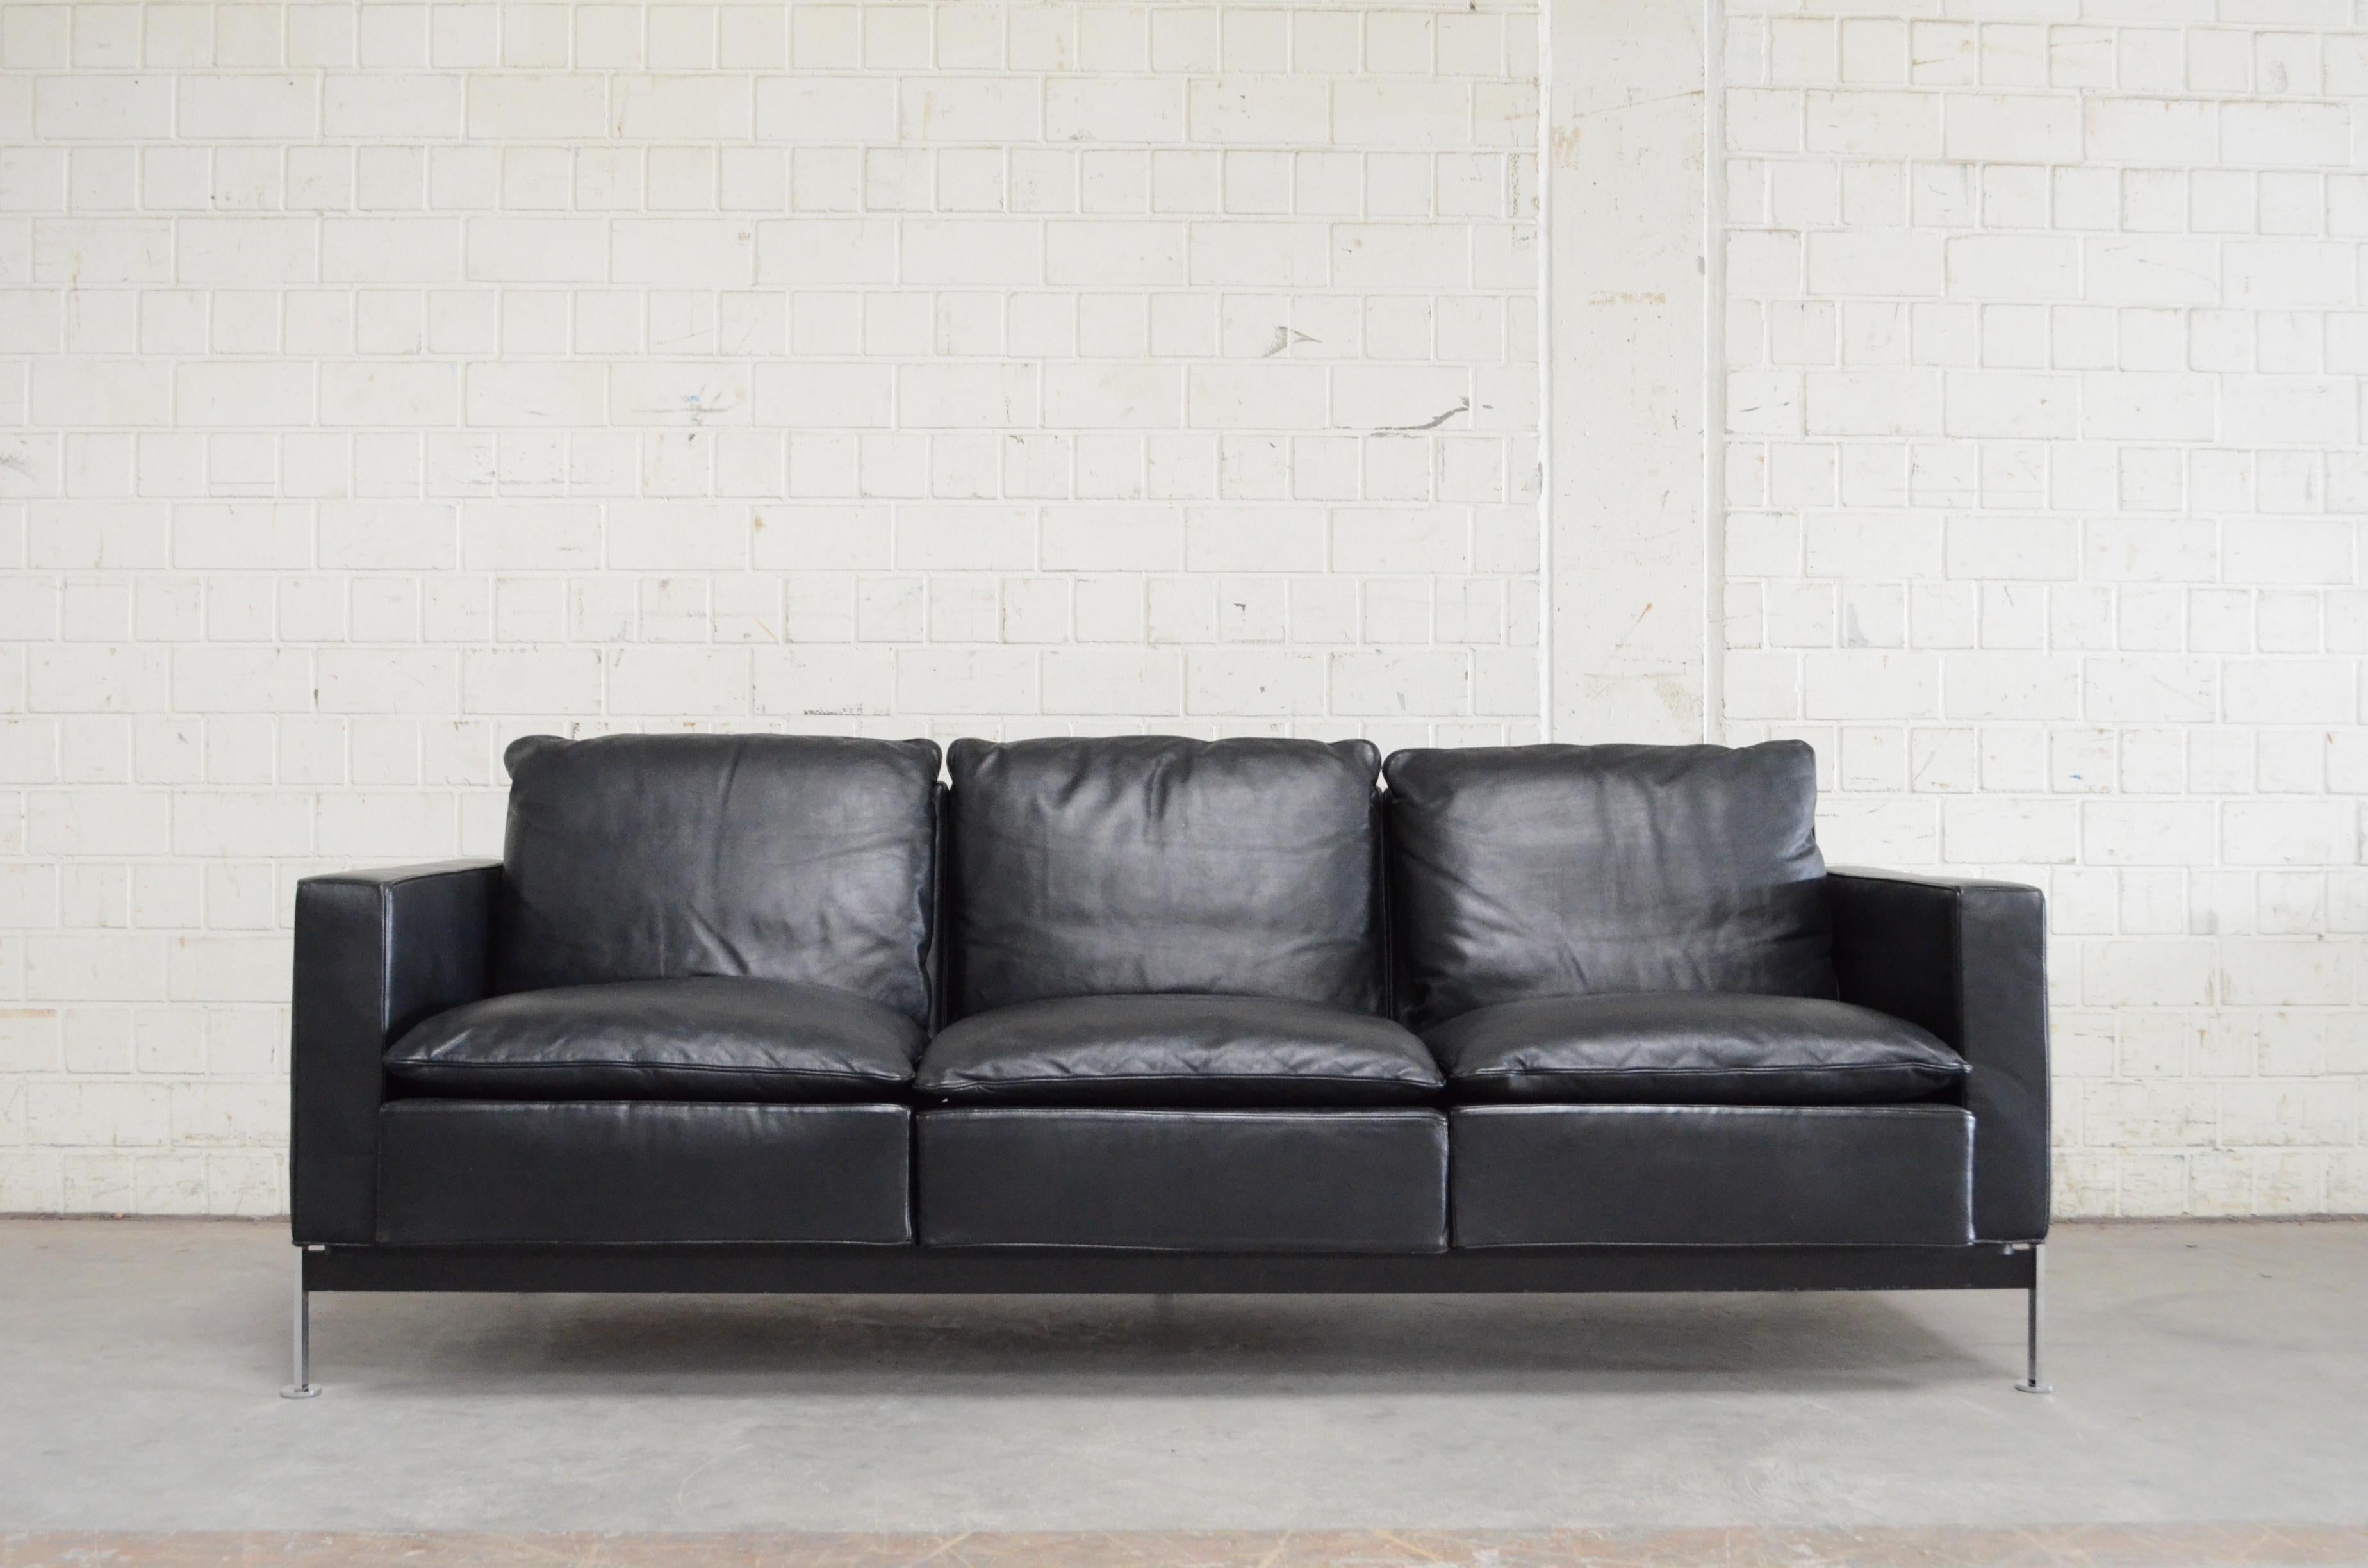 Robert Haussmann RH 302 3-sitziges Sofa, hergestellt von Hans Kaufeld.
Dieses Sofa ist die erste frühe Produktion für Hans Kaufeld.
Später wurde es von De Sede hergestellt.
Sehen Sie sich einfach das Etikett von Ernst Ries & Sohn in Deutschland